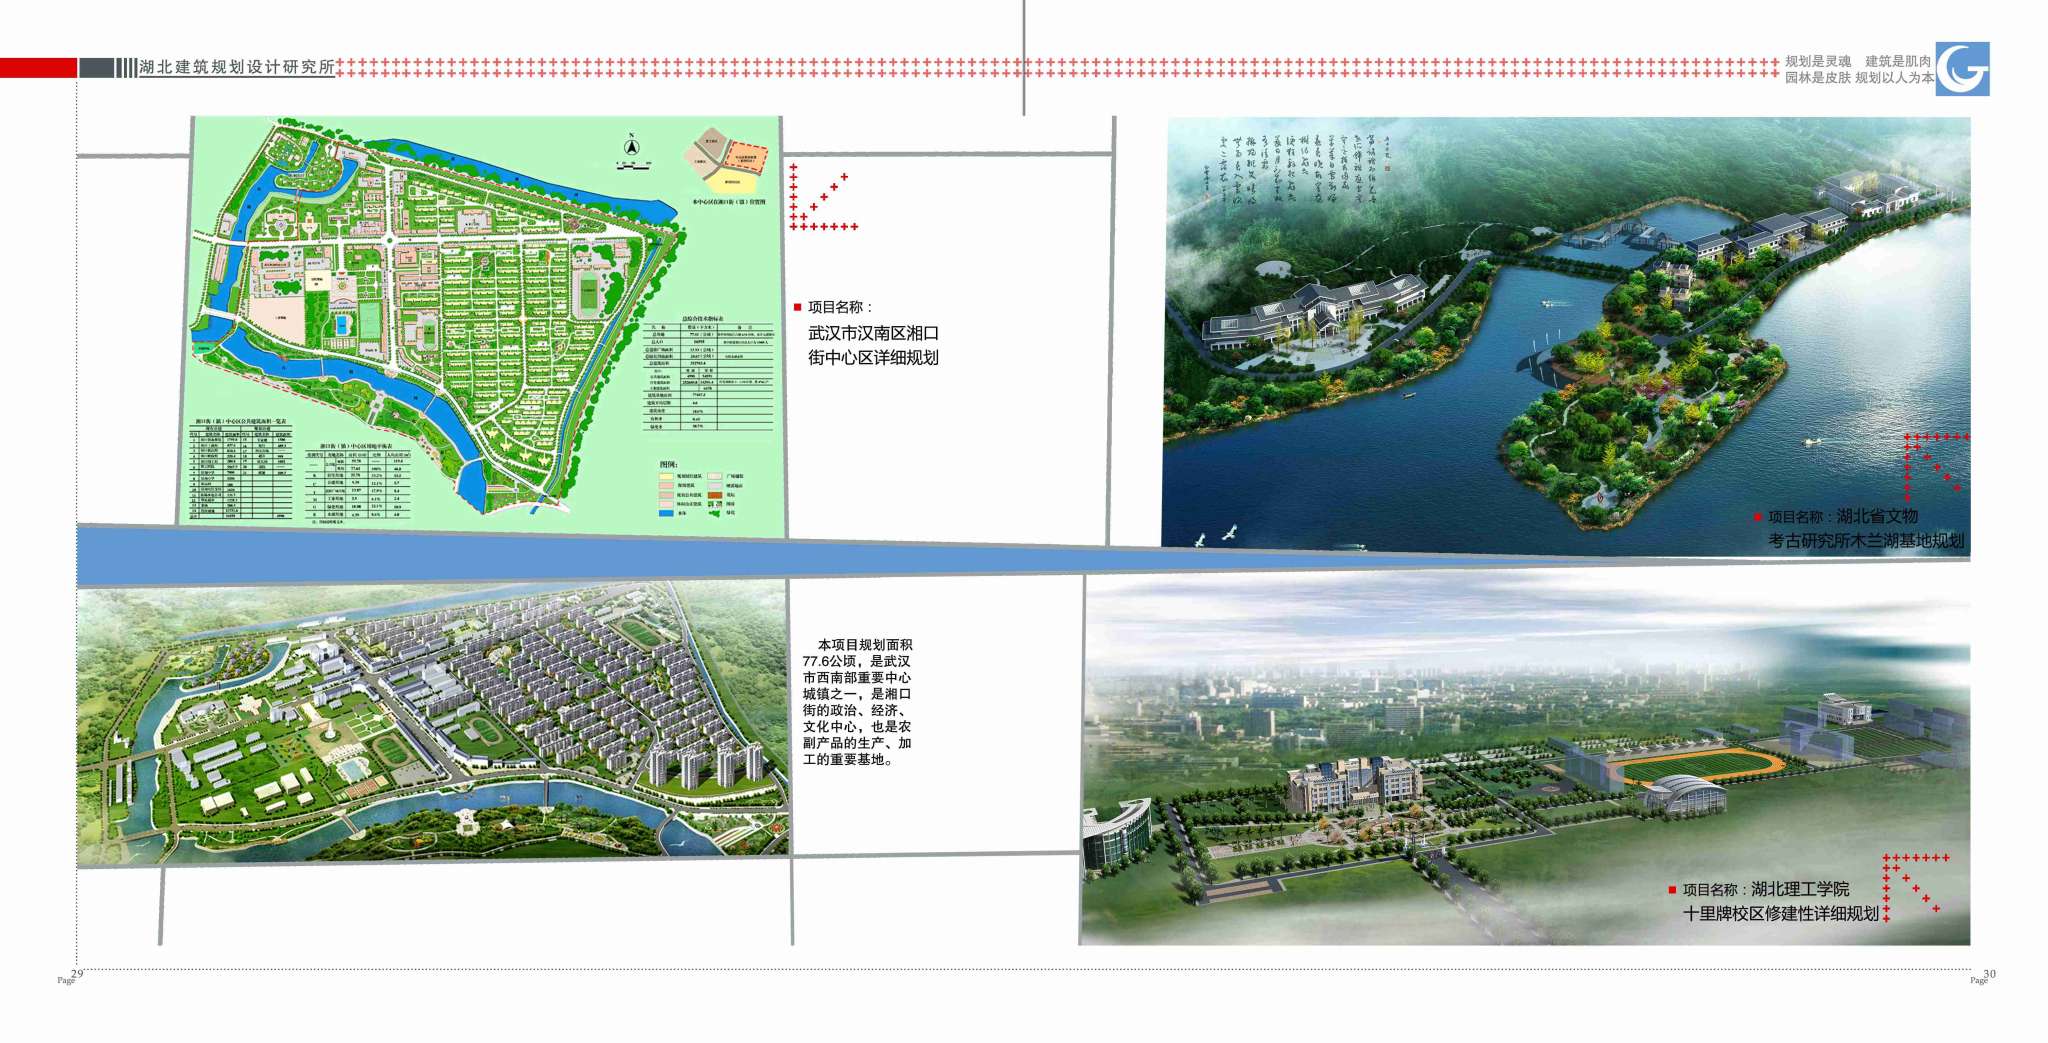 004-08规划设计-木兰湖、汉南湘口、湖北理工